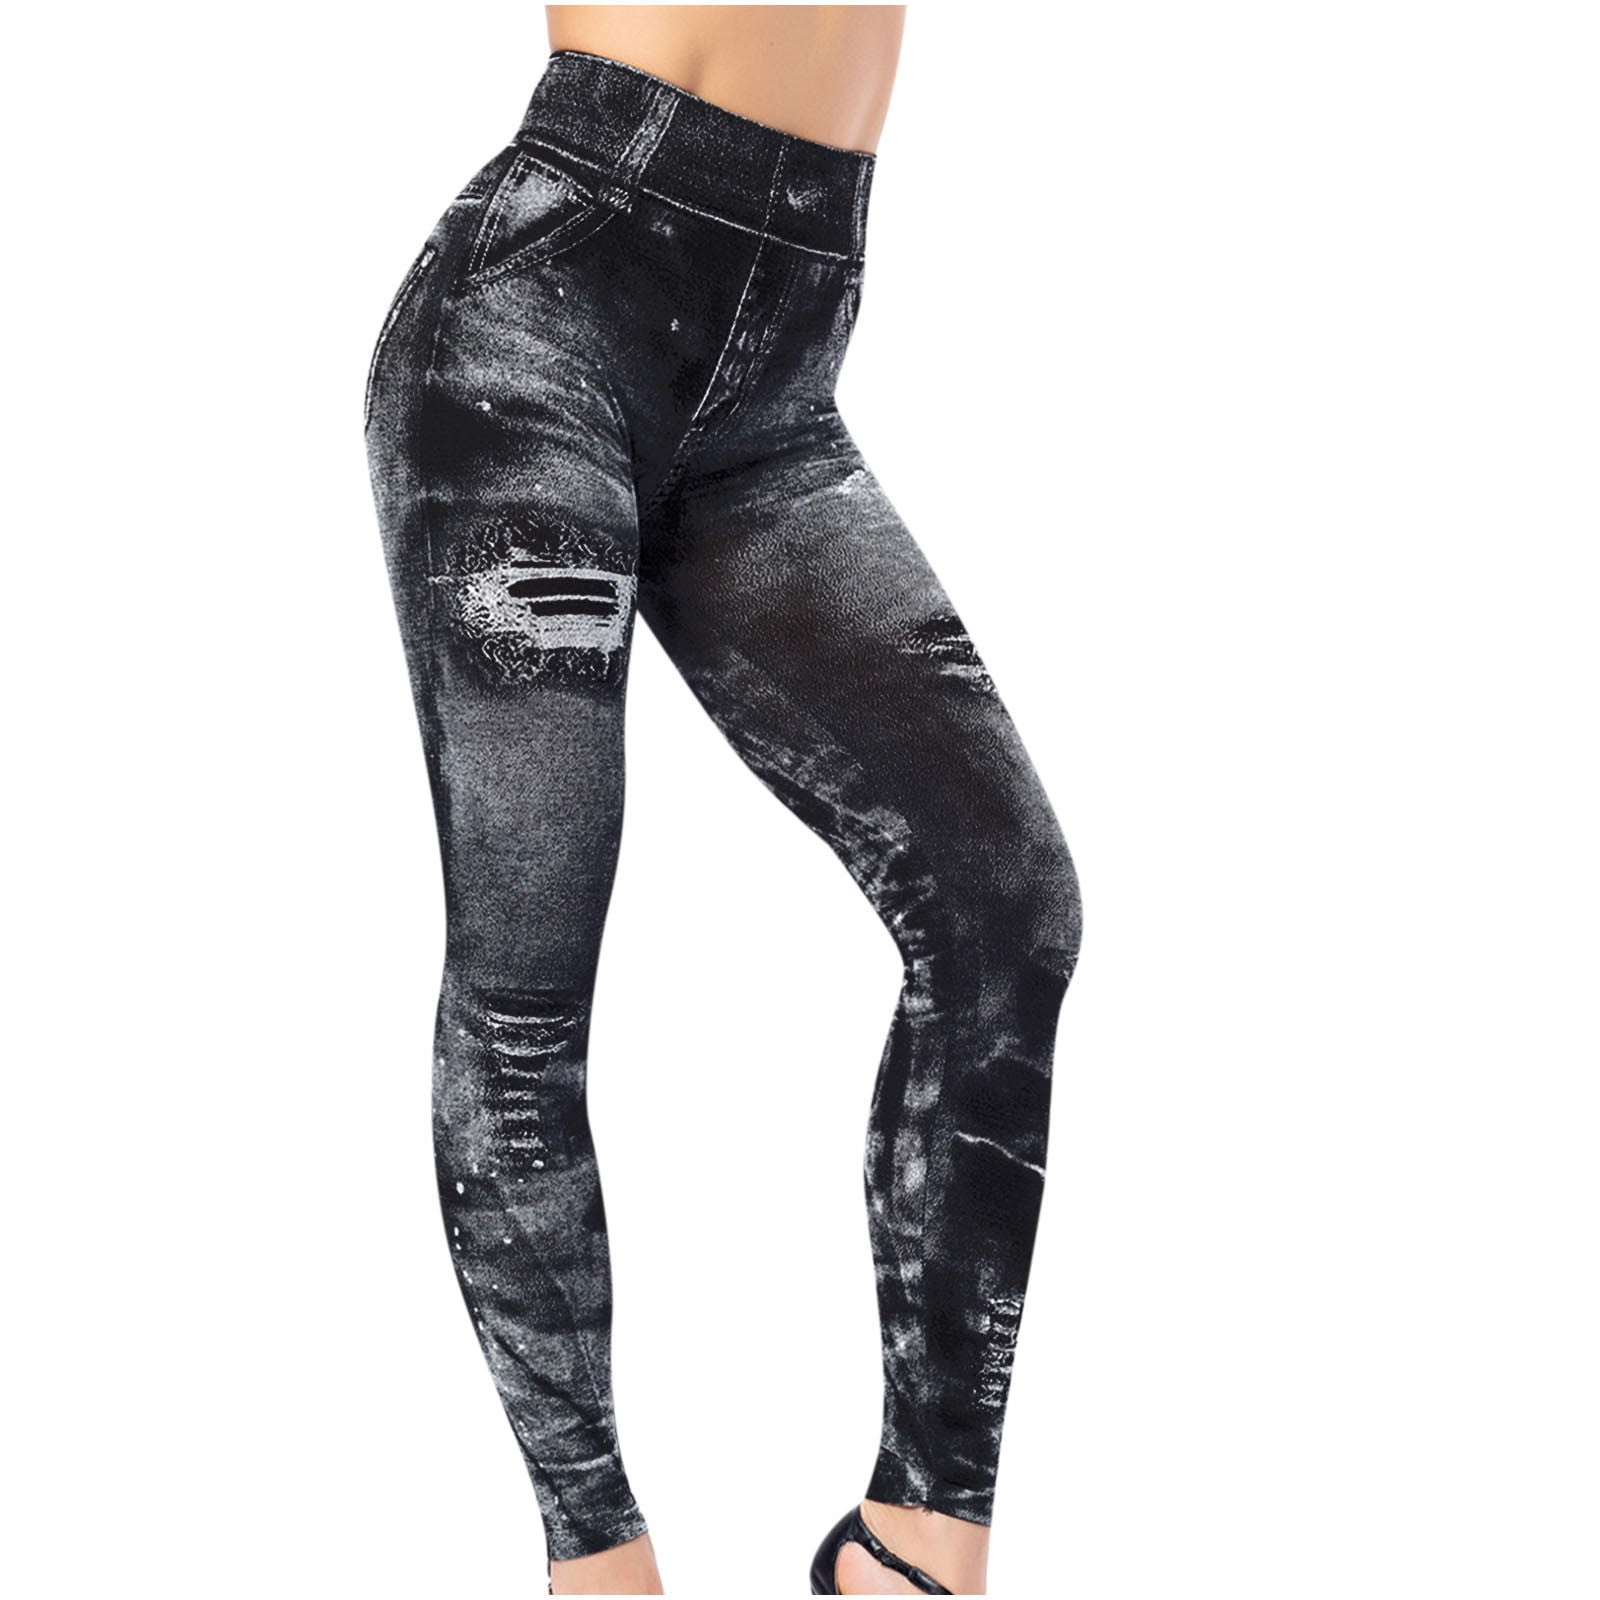 Lolmot Jeggings For Women Stretchy High Waist Jeans Slim